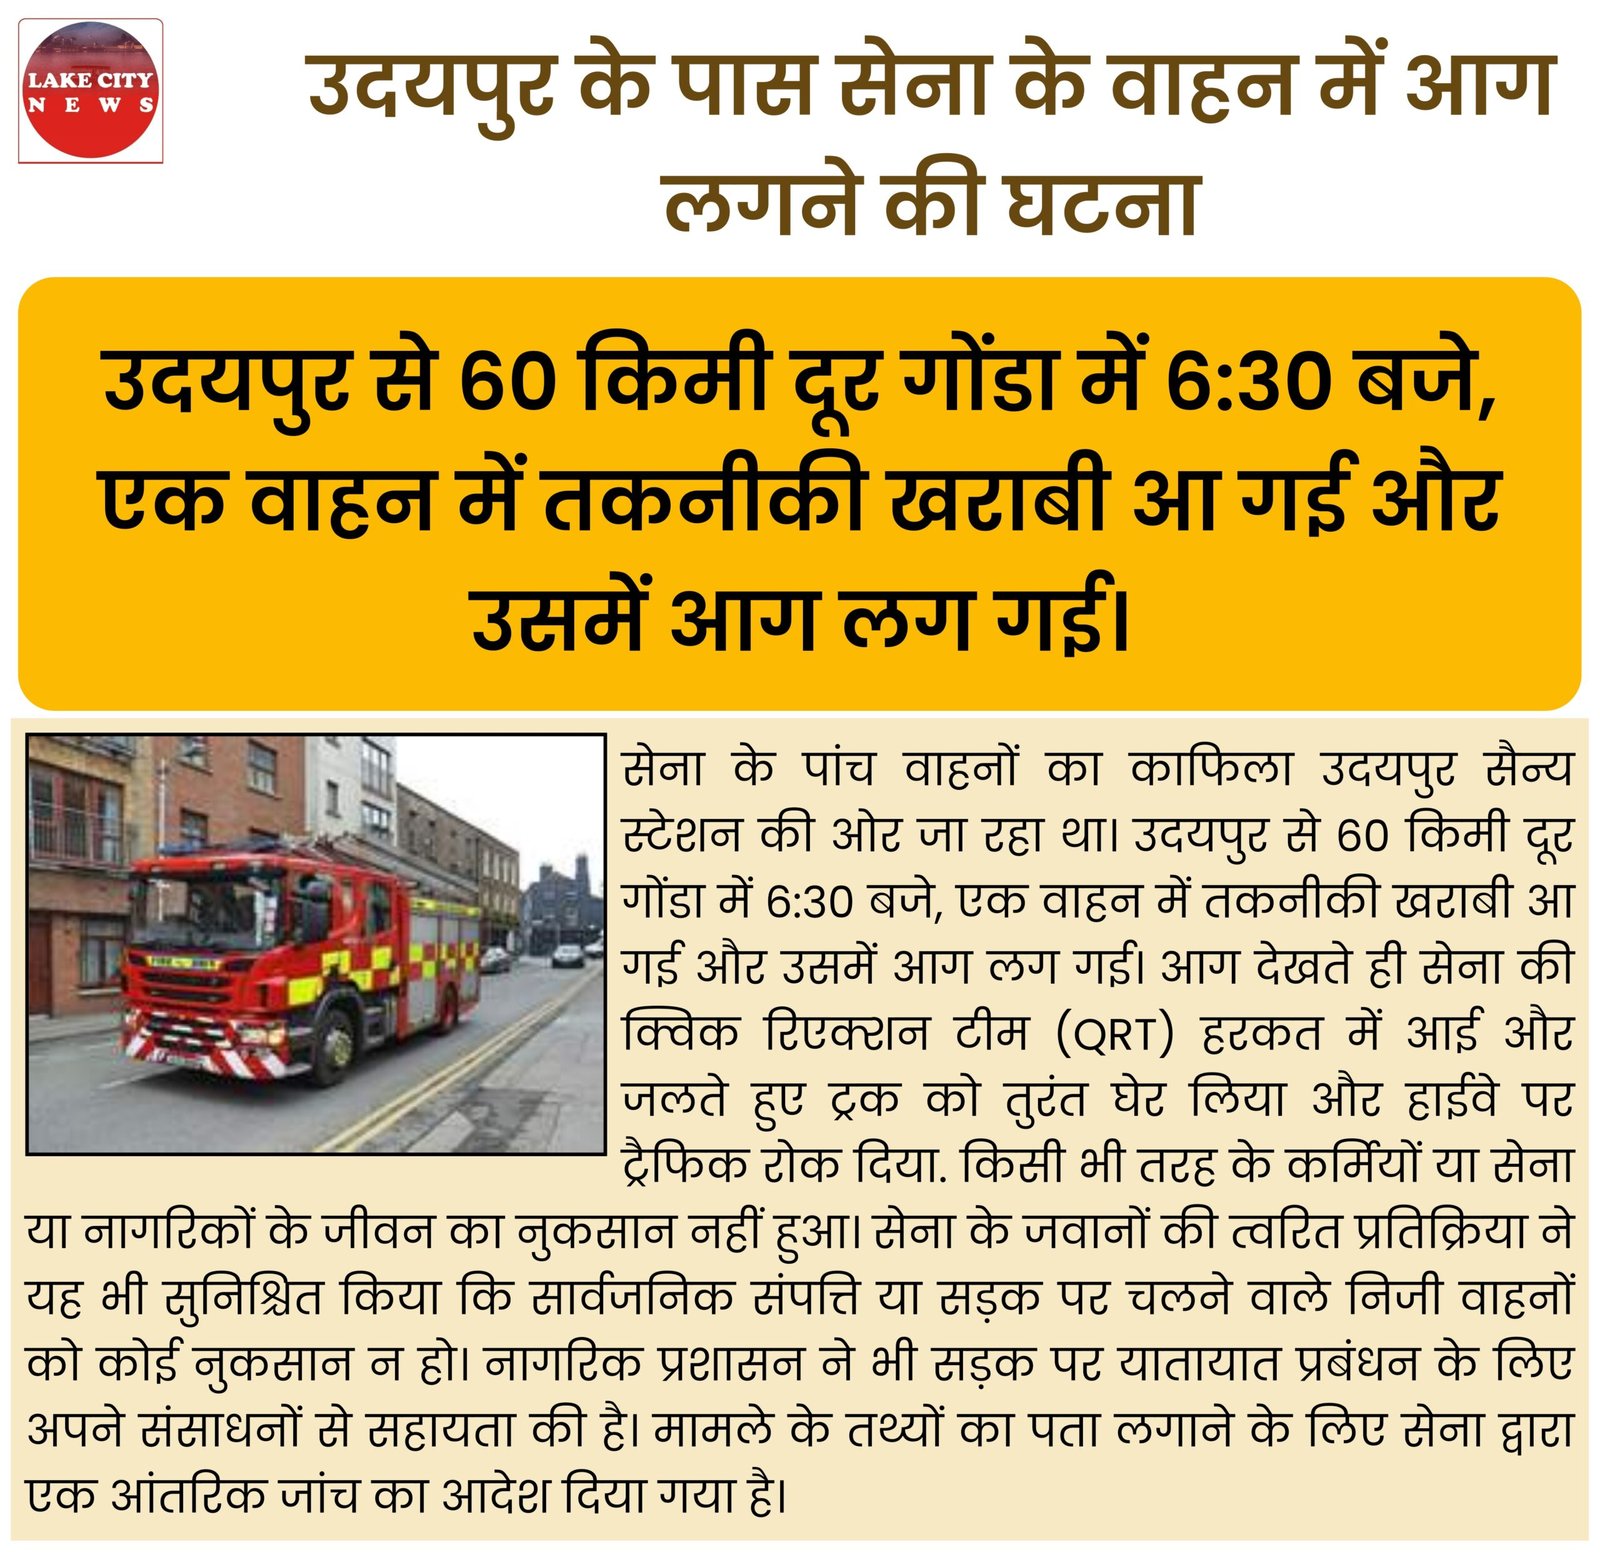 उदयपुर के पास सेना के वाहन में आग लगने की घटना